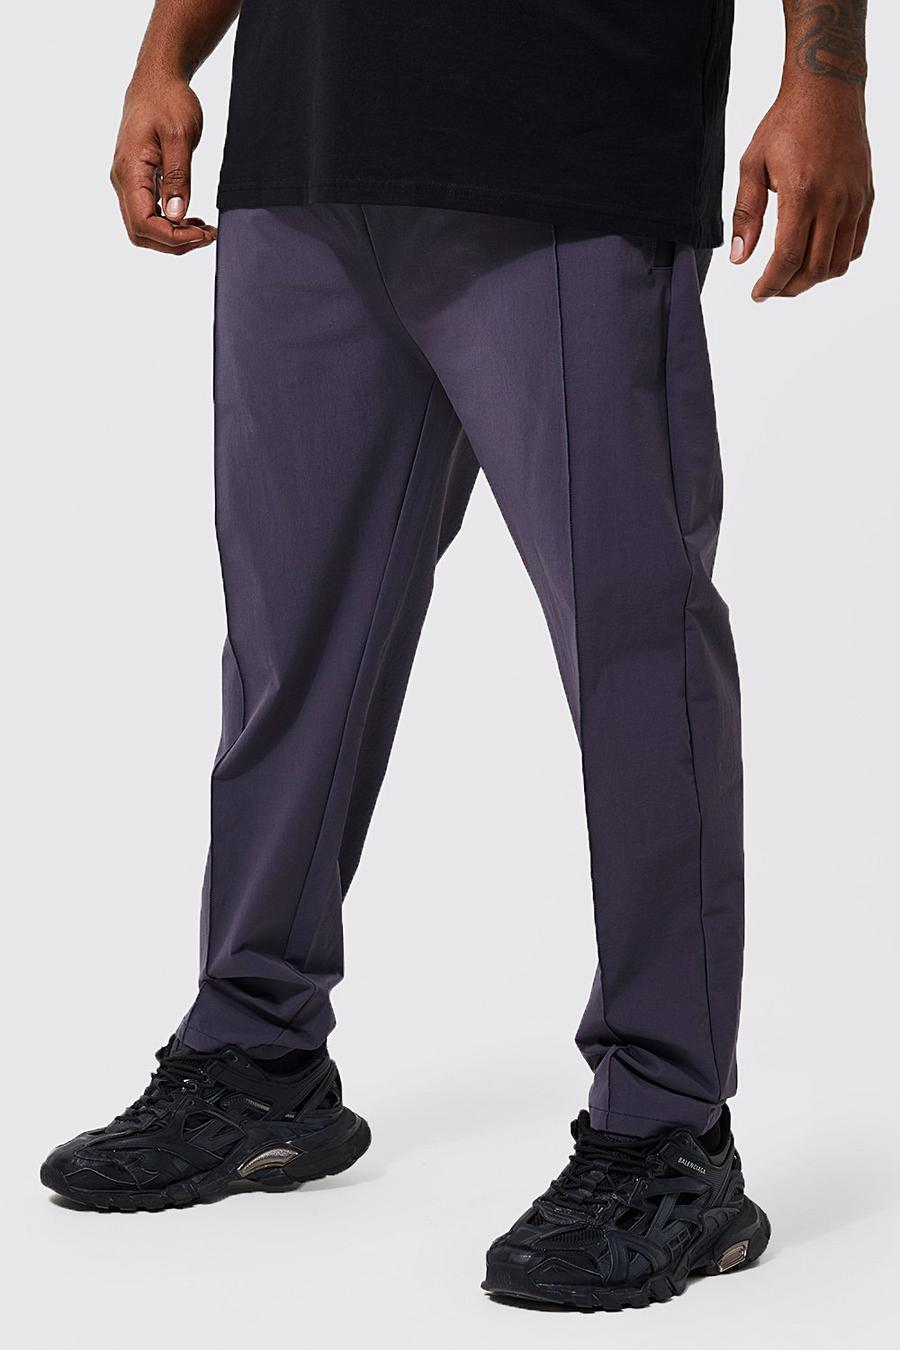 אפור כהה gris מכנסי עבודה בגזרה צרה עם קפל קדמי, מידות גדולות